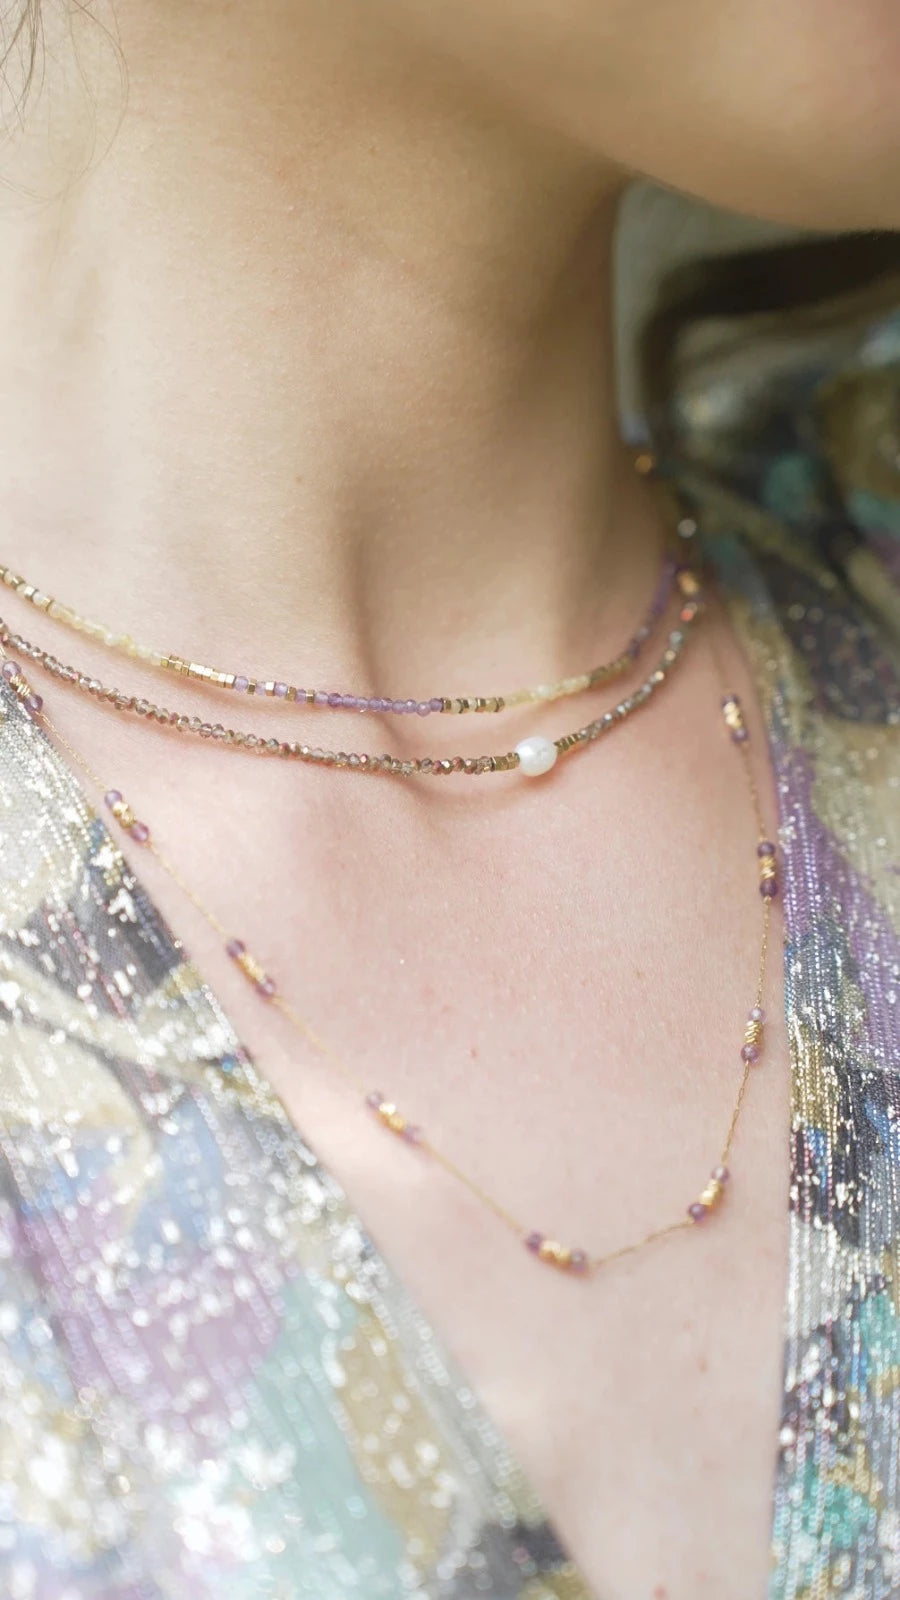 collier aux petites perles jaunes et violettes et détails dorés